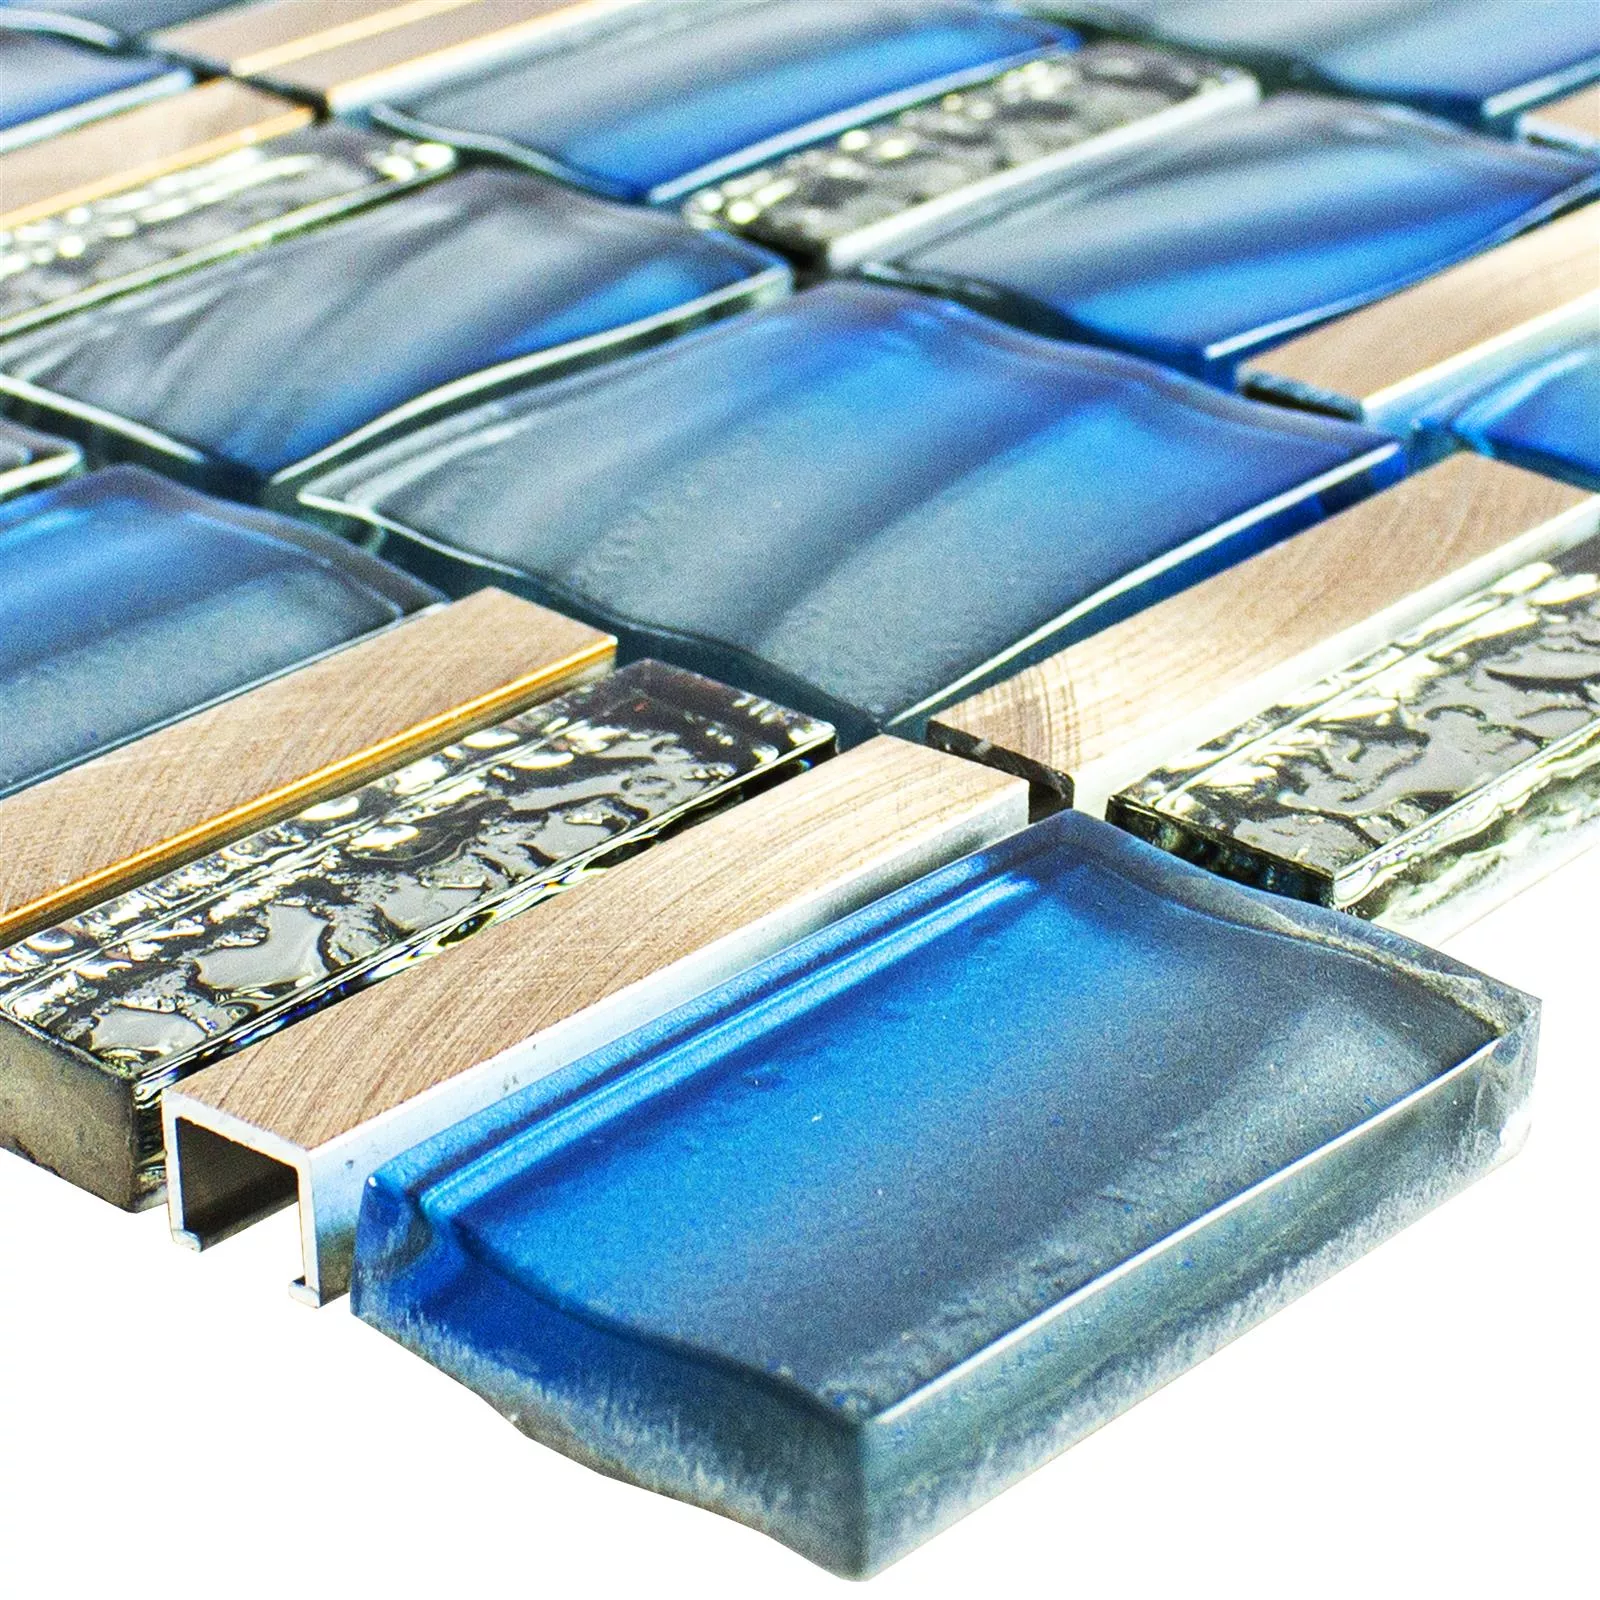 Muestra Cristal Metal Azulejos De Mosaico Union Azul Cobre